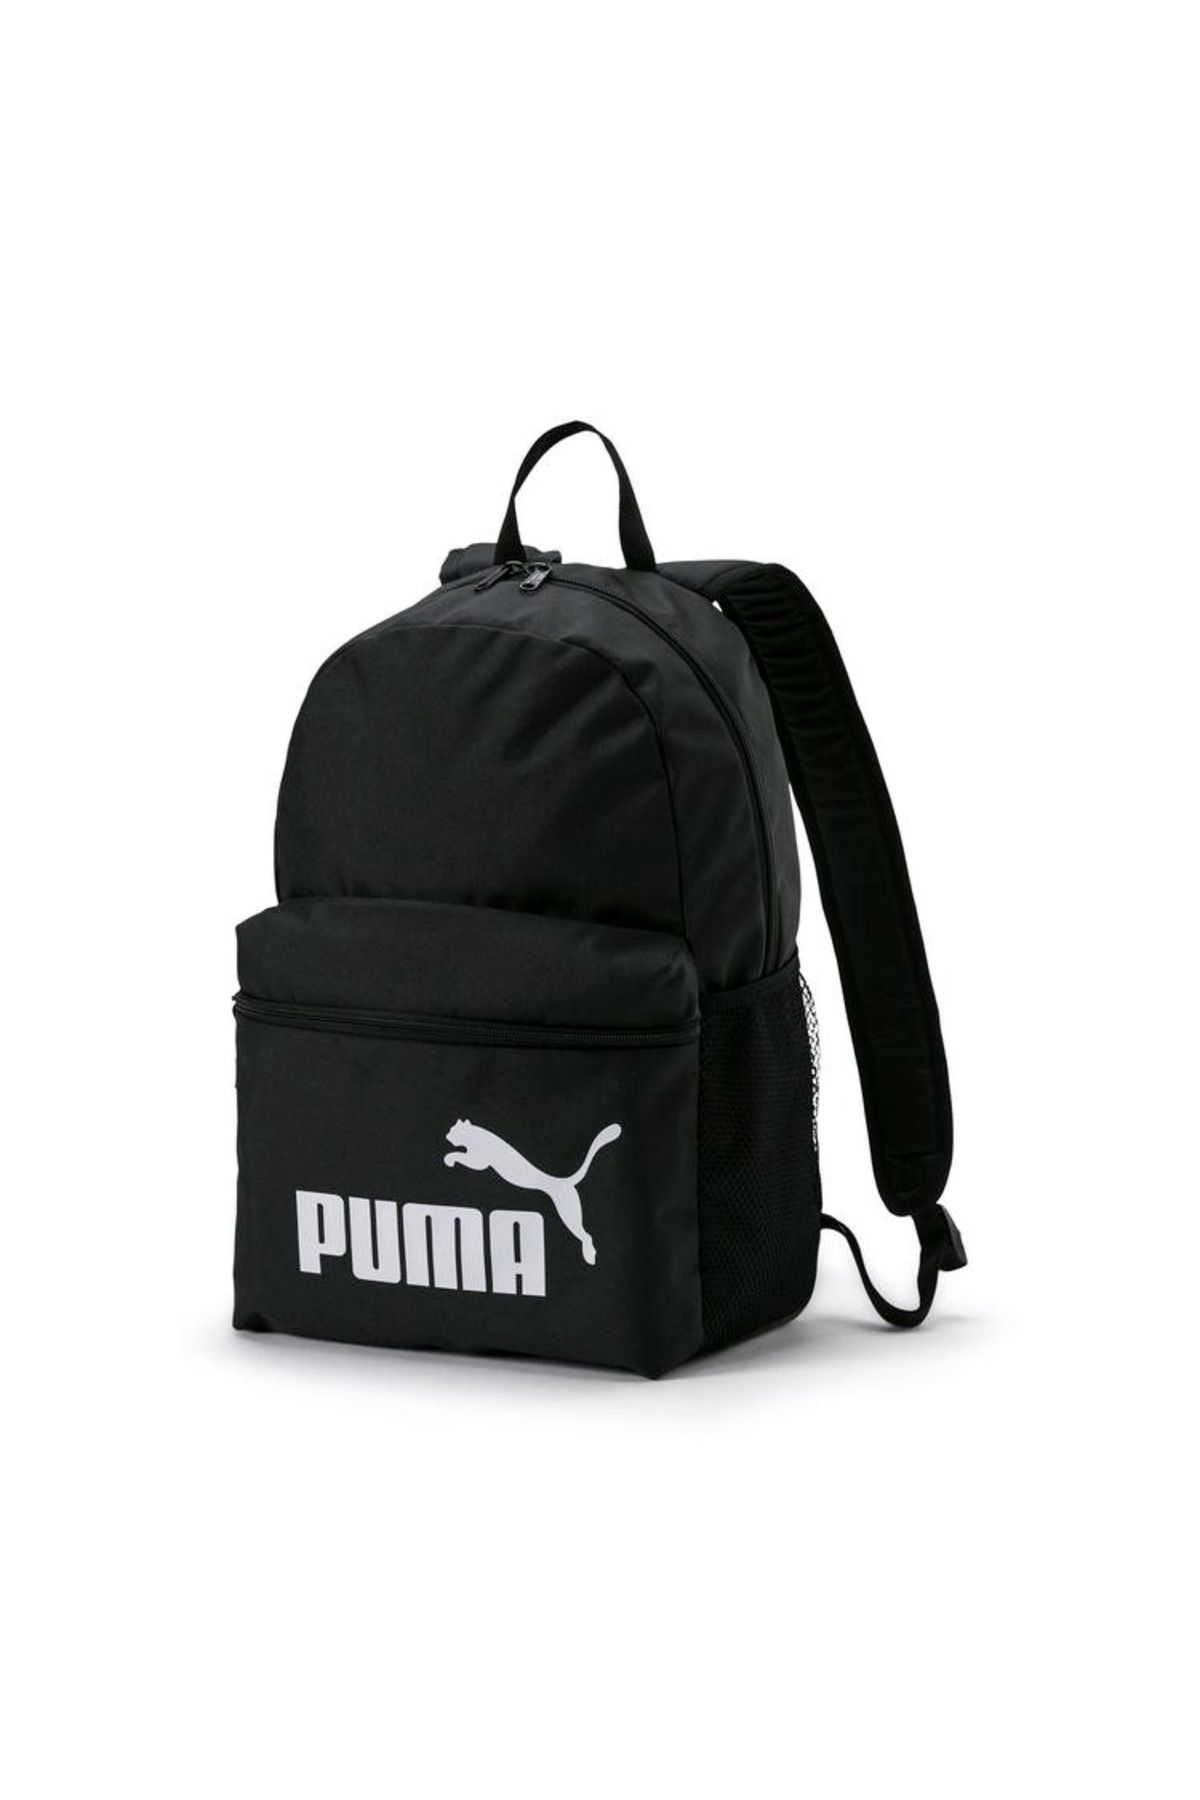 Puma Phase Backpack07994301